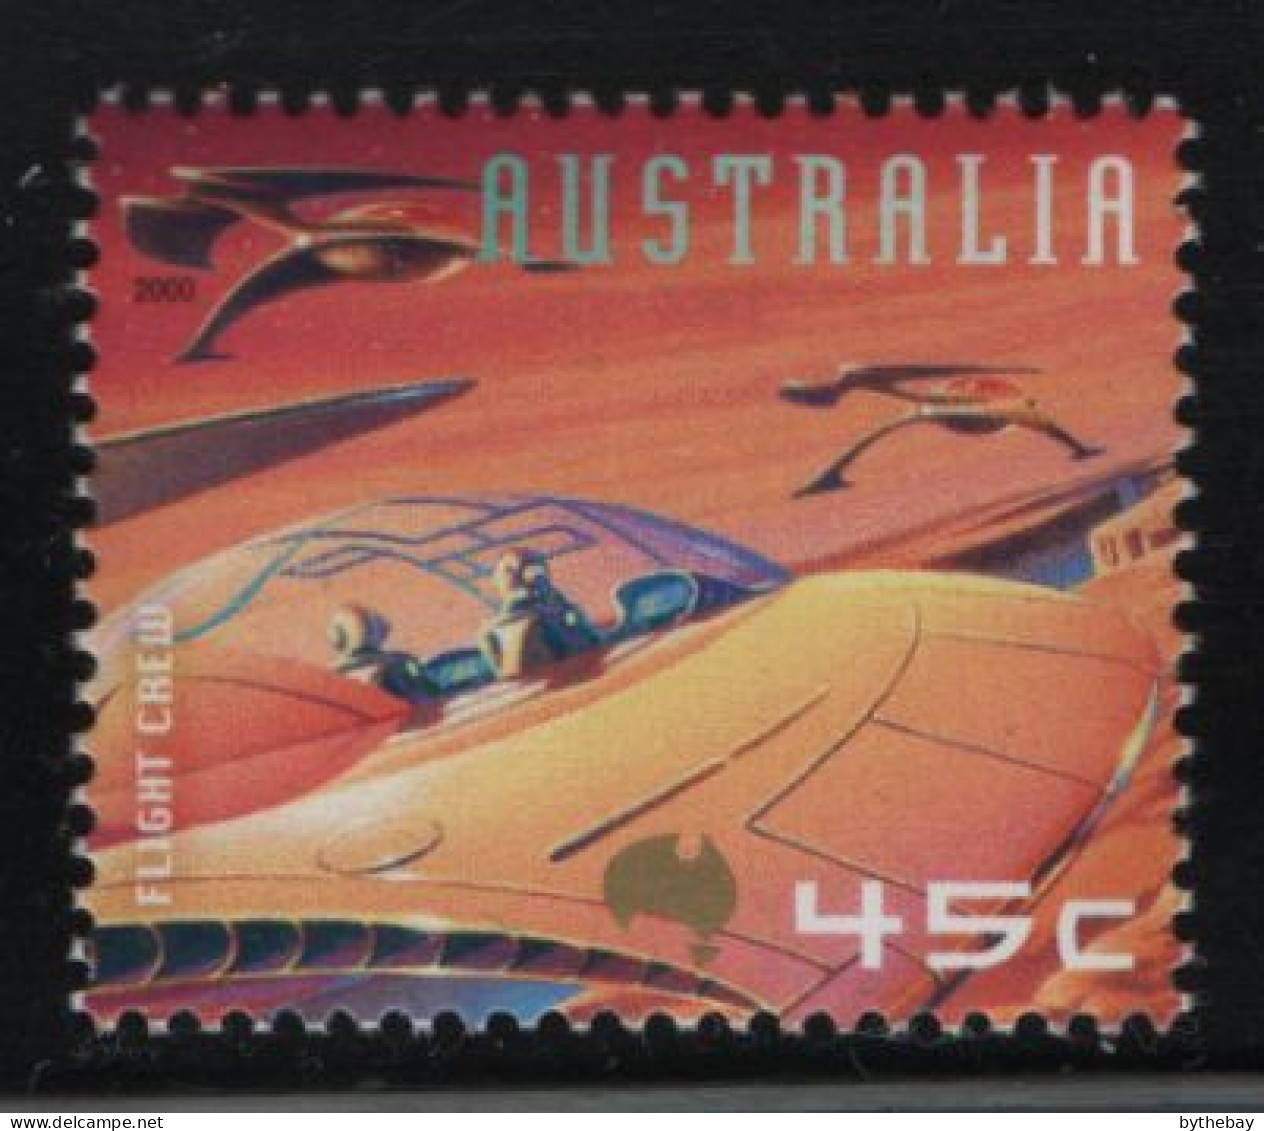 Australia 2000 MNH Sc 1908 45c Flight Crew Space - Ongebruikt